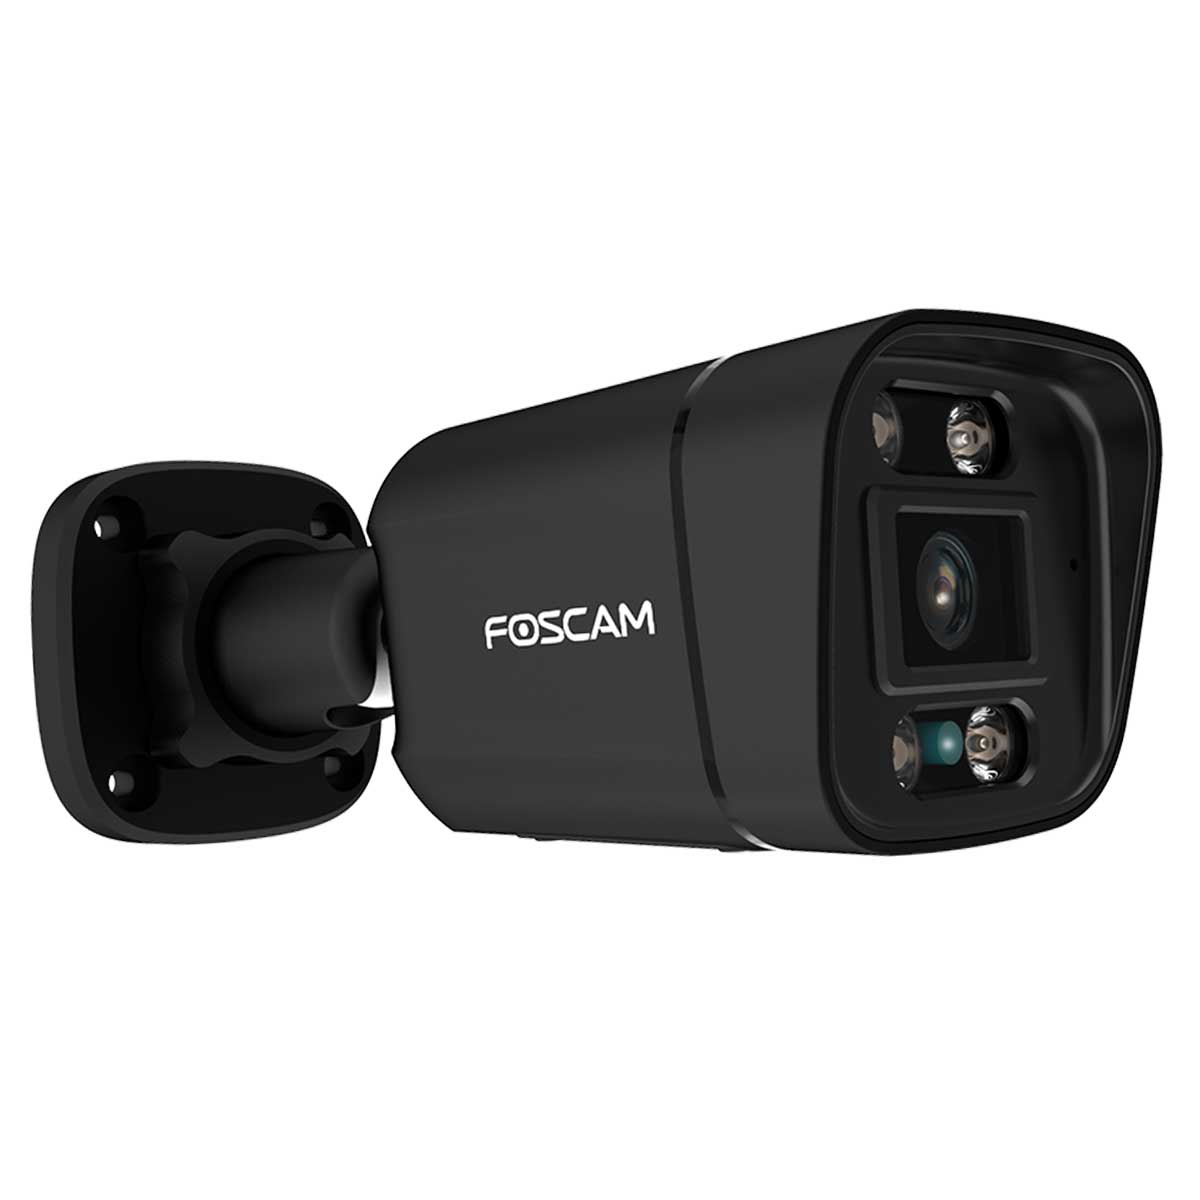 Überwachungskamera, Video: 2160 3840 V8EP, Auflösung FOSCAM x